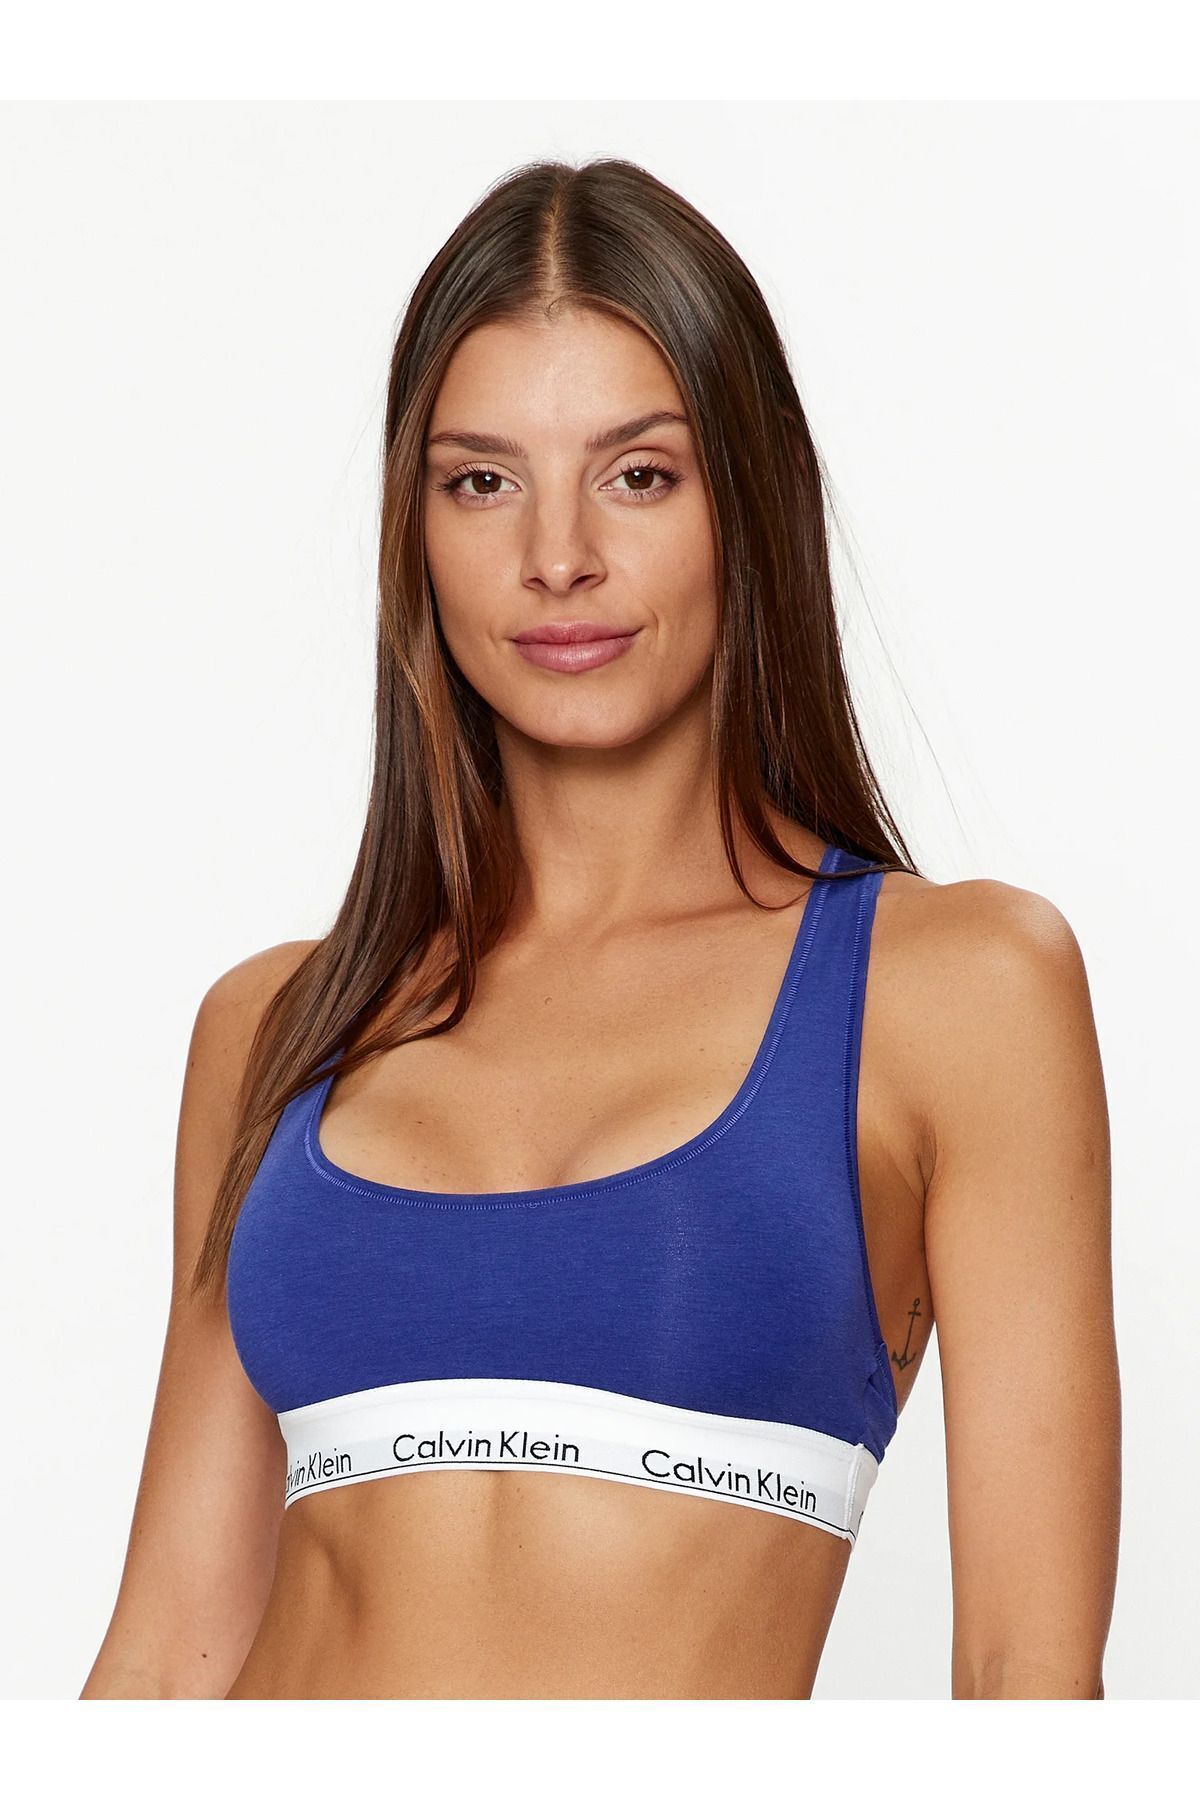 Calvin Klein Kadın Marka Logolu Askılı Spor Giyim Günlük Lacivert Büstiyer 0000F3785E-FPT